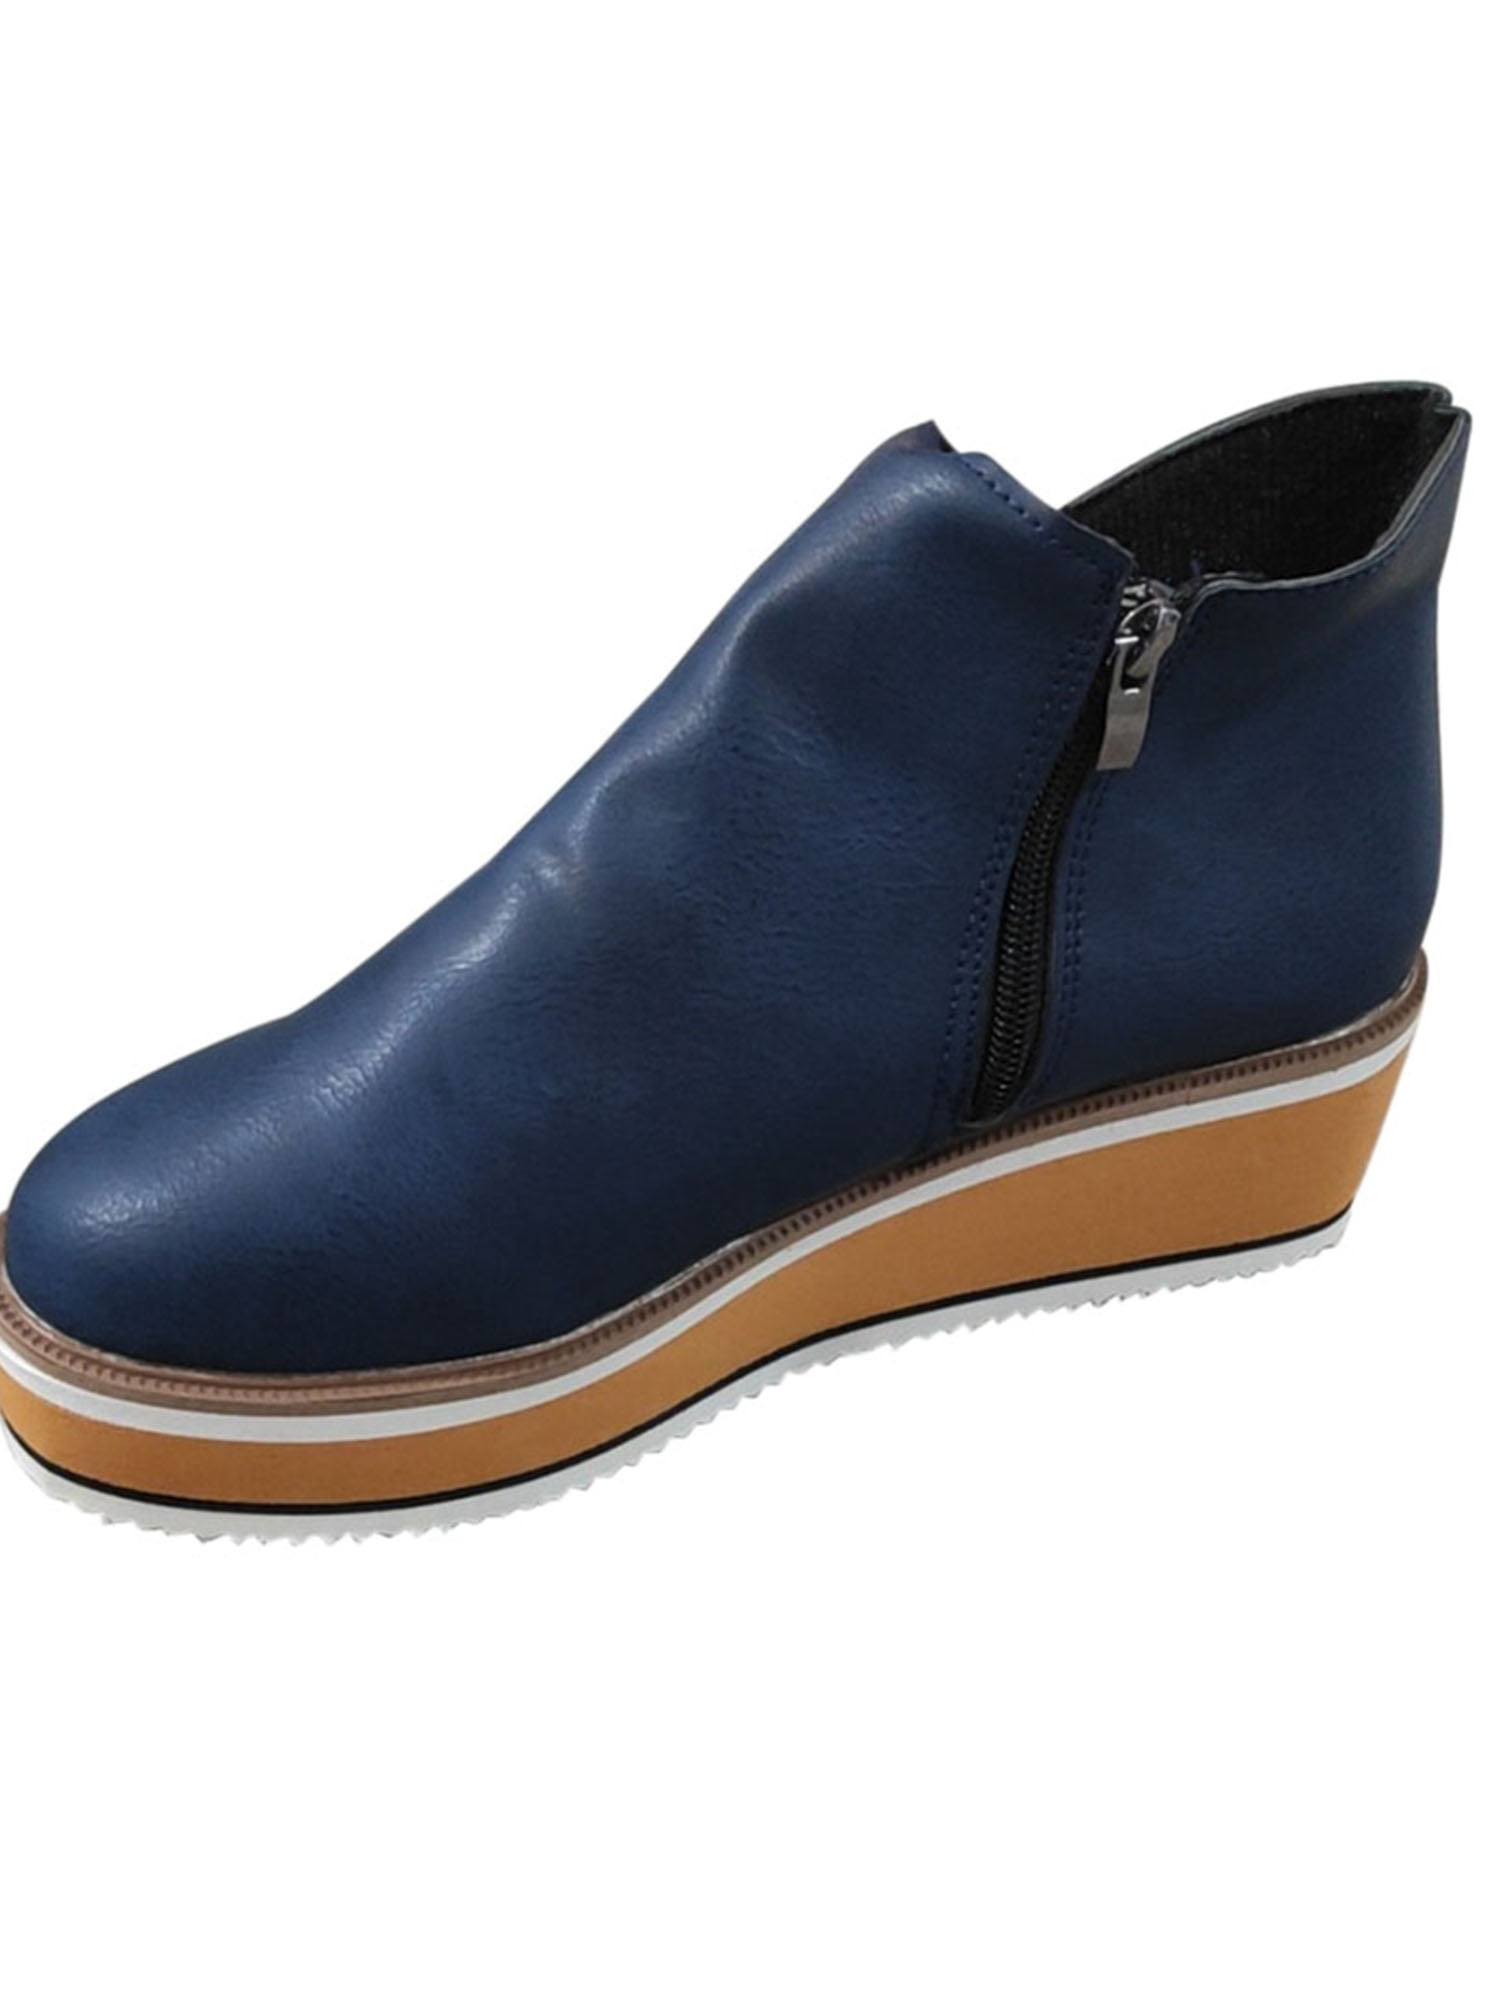 SIMANLAN Women Slip On Platform Suede Loafers High Heel Wedge Moccasins Walking Sneakers Blue US 7 5 49e6dc4b c37a 4543 8561 aa819804c51f.2d3d7908310a89dd986e37b081f03adf